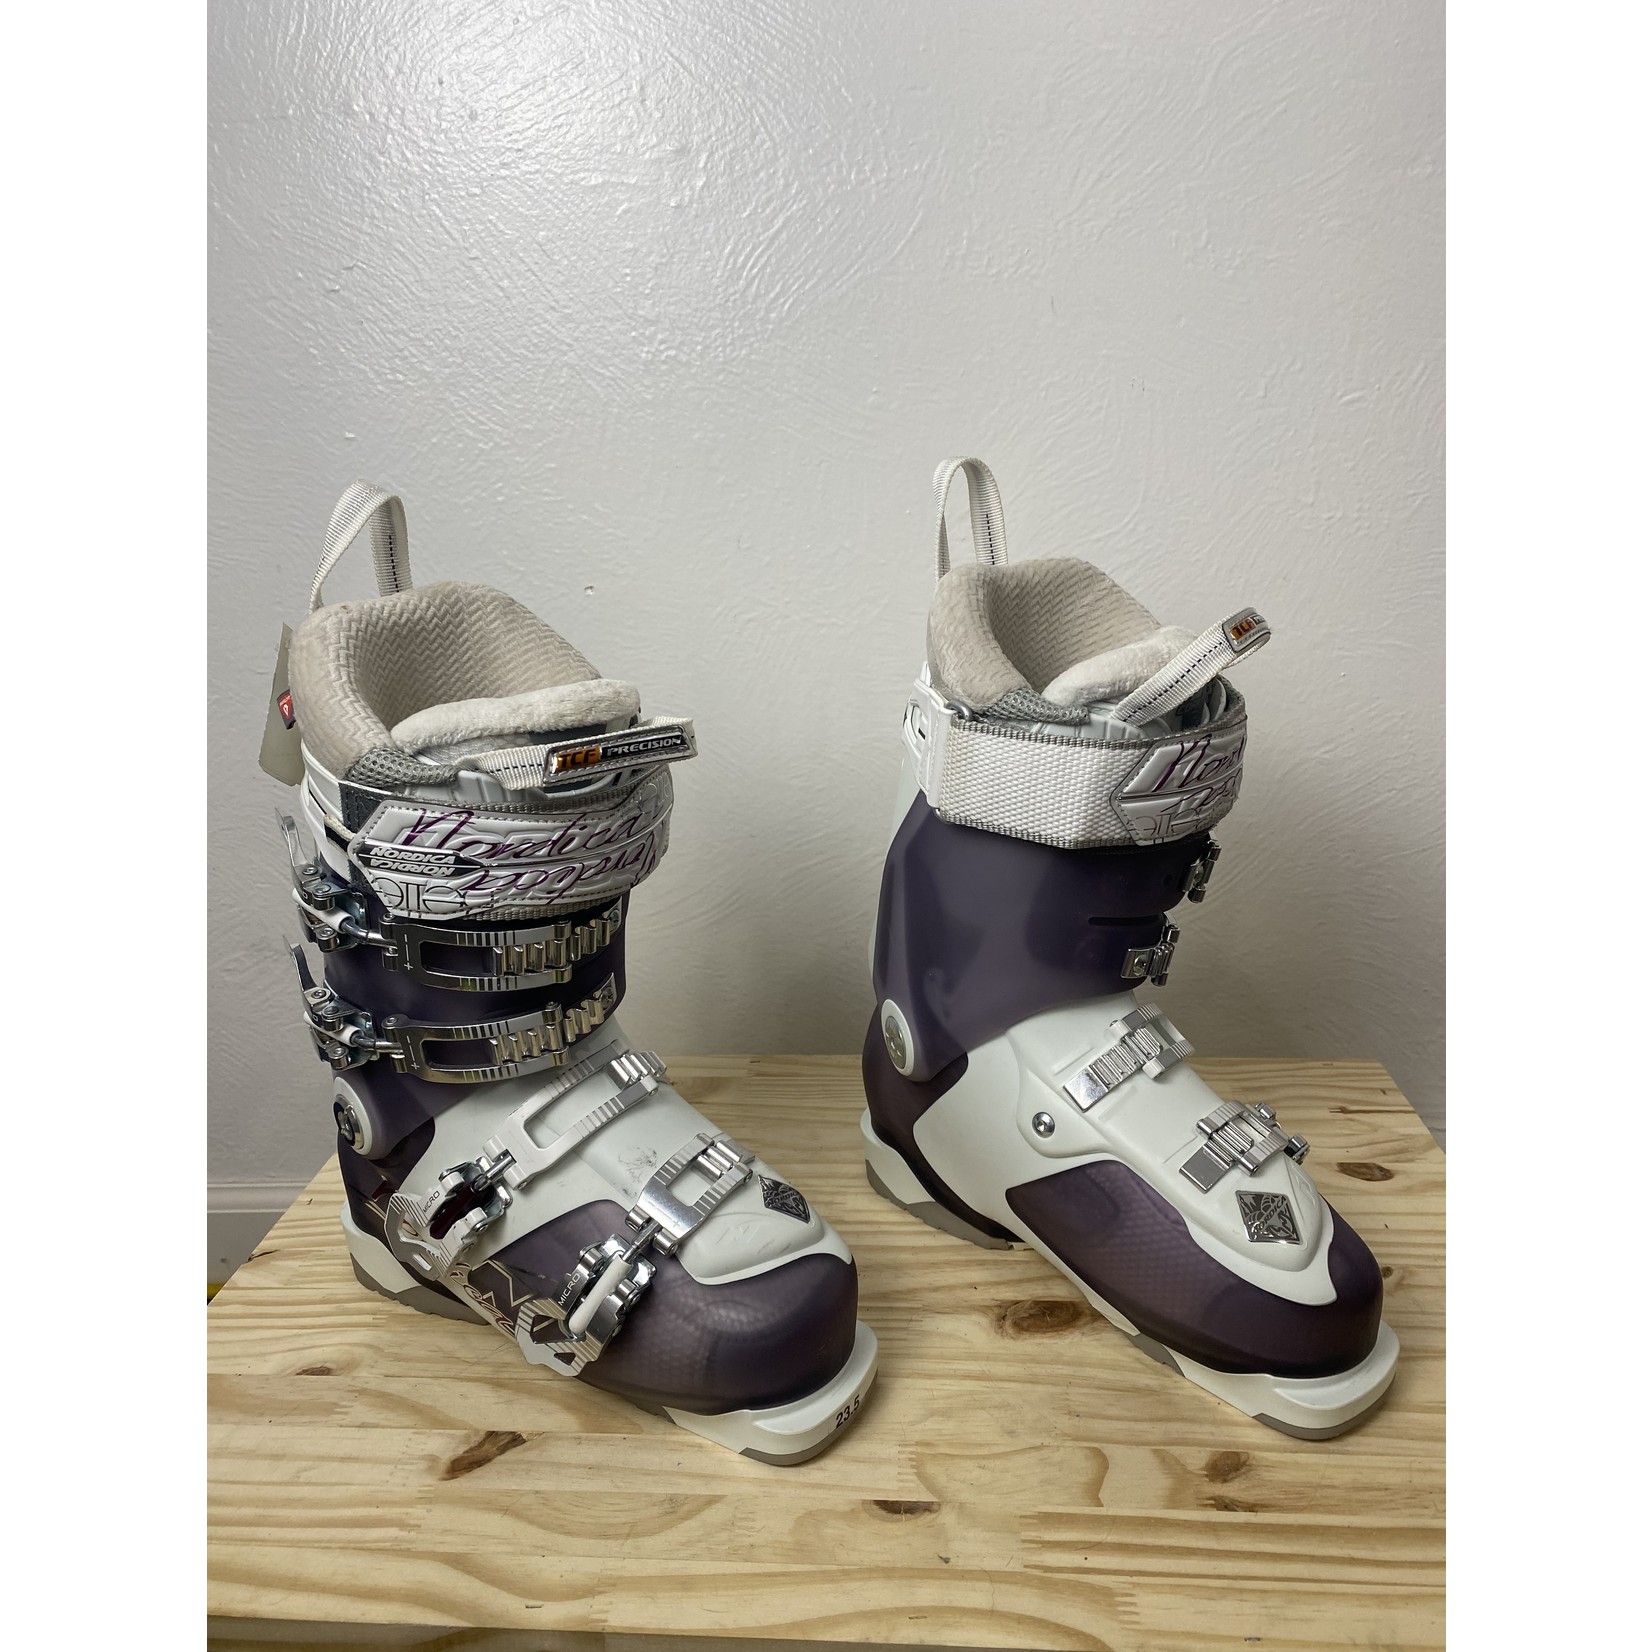 Nordica NEW Nordica Belle Pro Women's Ski Boots, Size 23.5